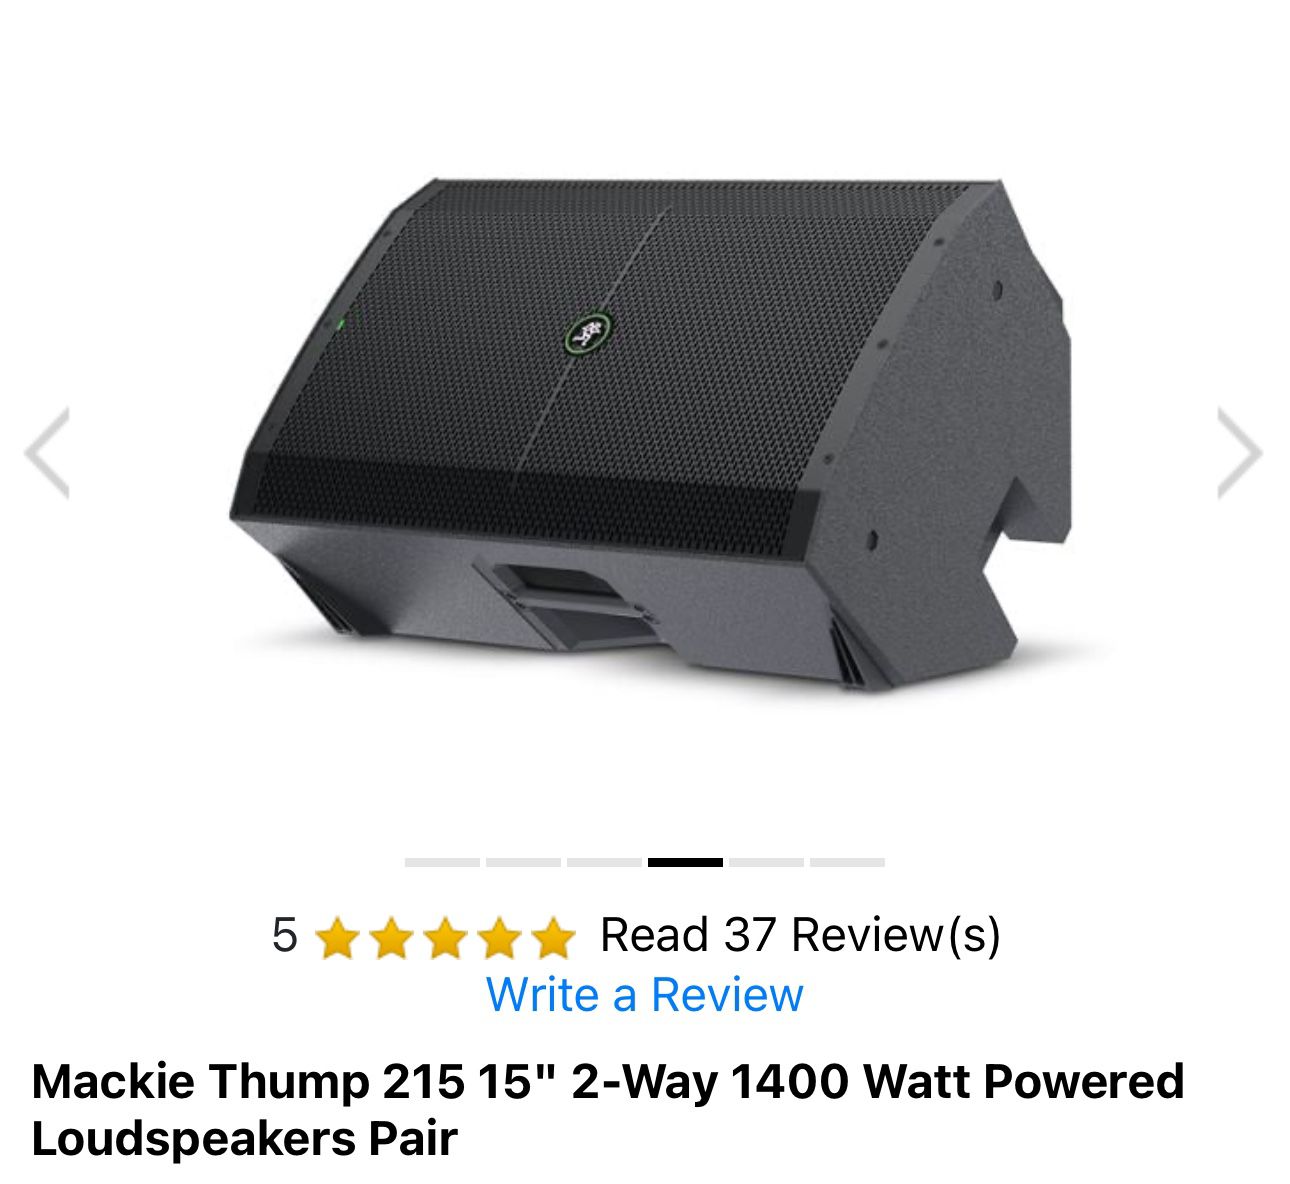 Mackie Thump 215 15" speakers